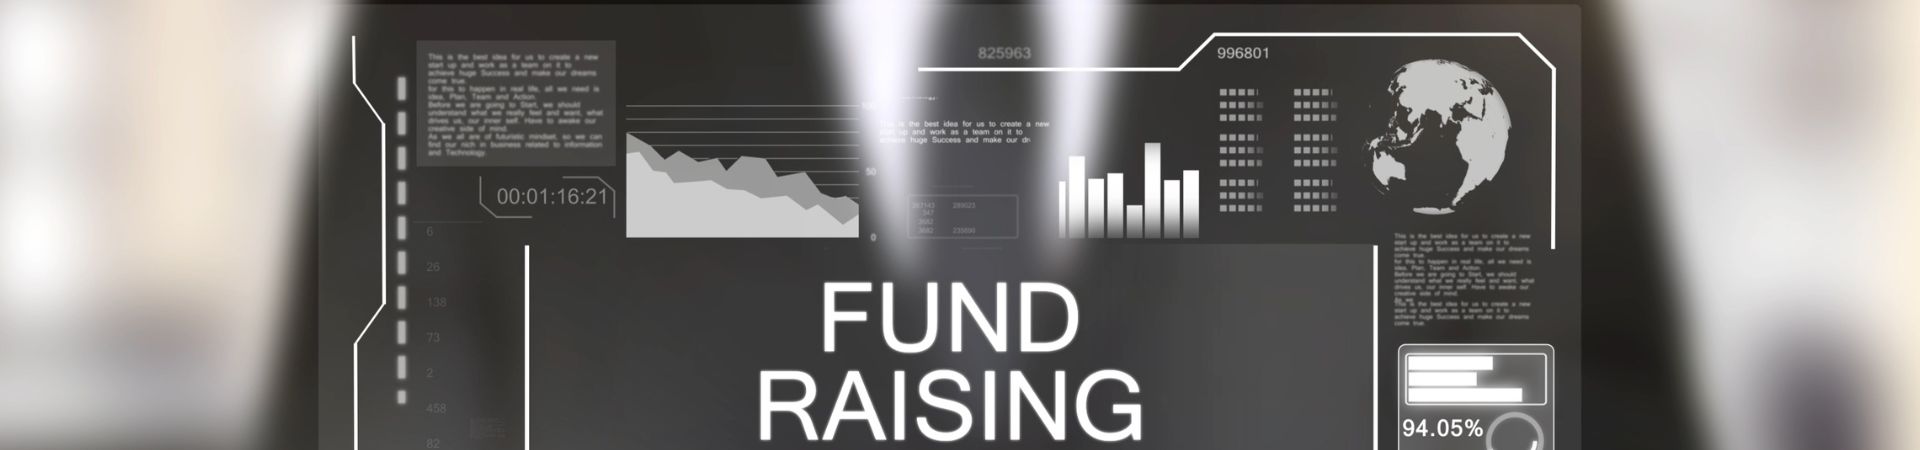 PE / VC Fund Raising